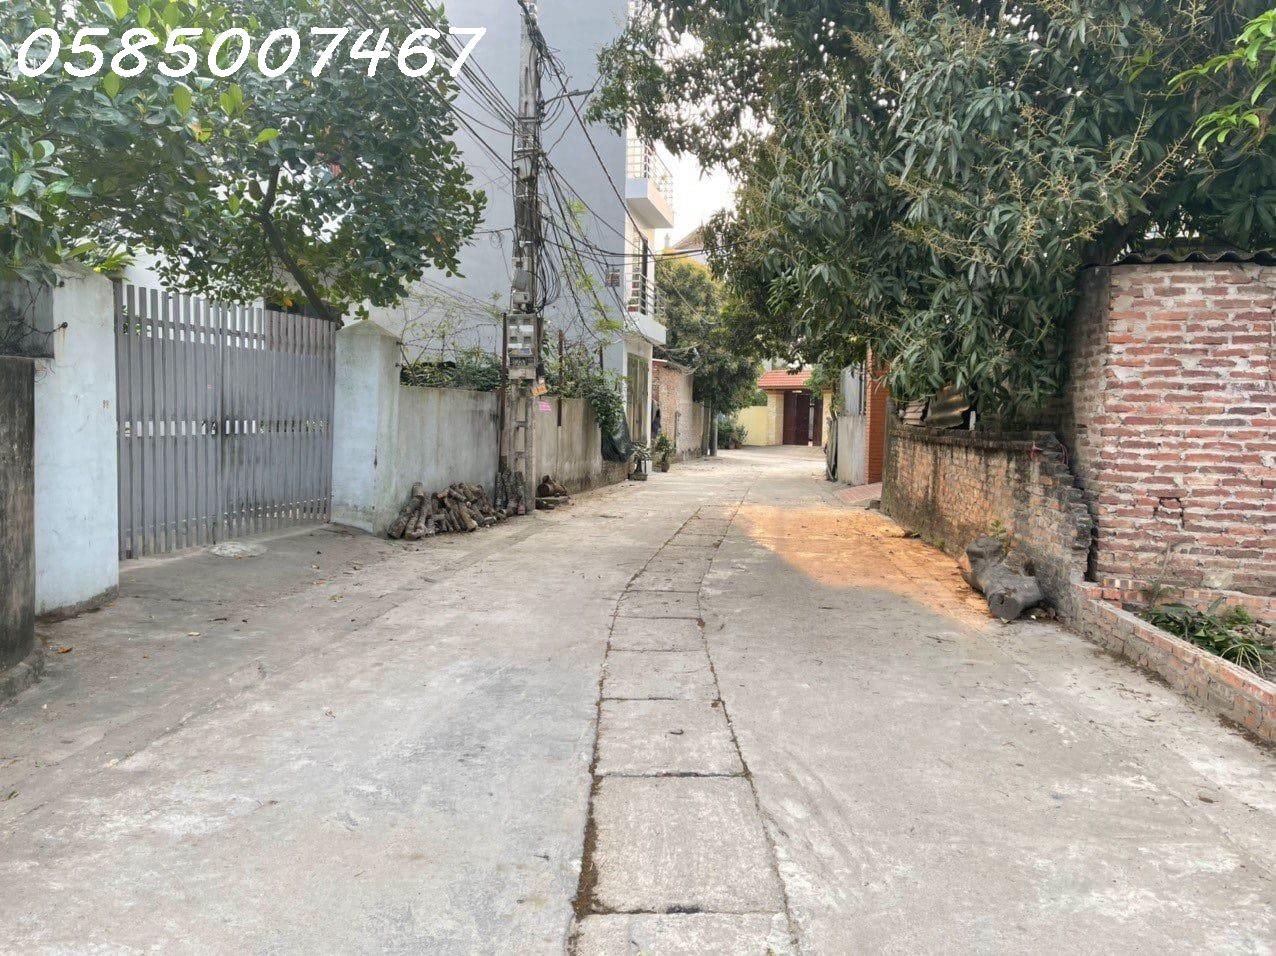 Chính chủ gửi bán lô góc 56,5m² đất Xóm Nhì, Vân Nội, Đông Anh. Ngay gần QL23 và đường Võ Nguyên Giáp. 2